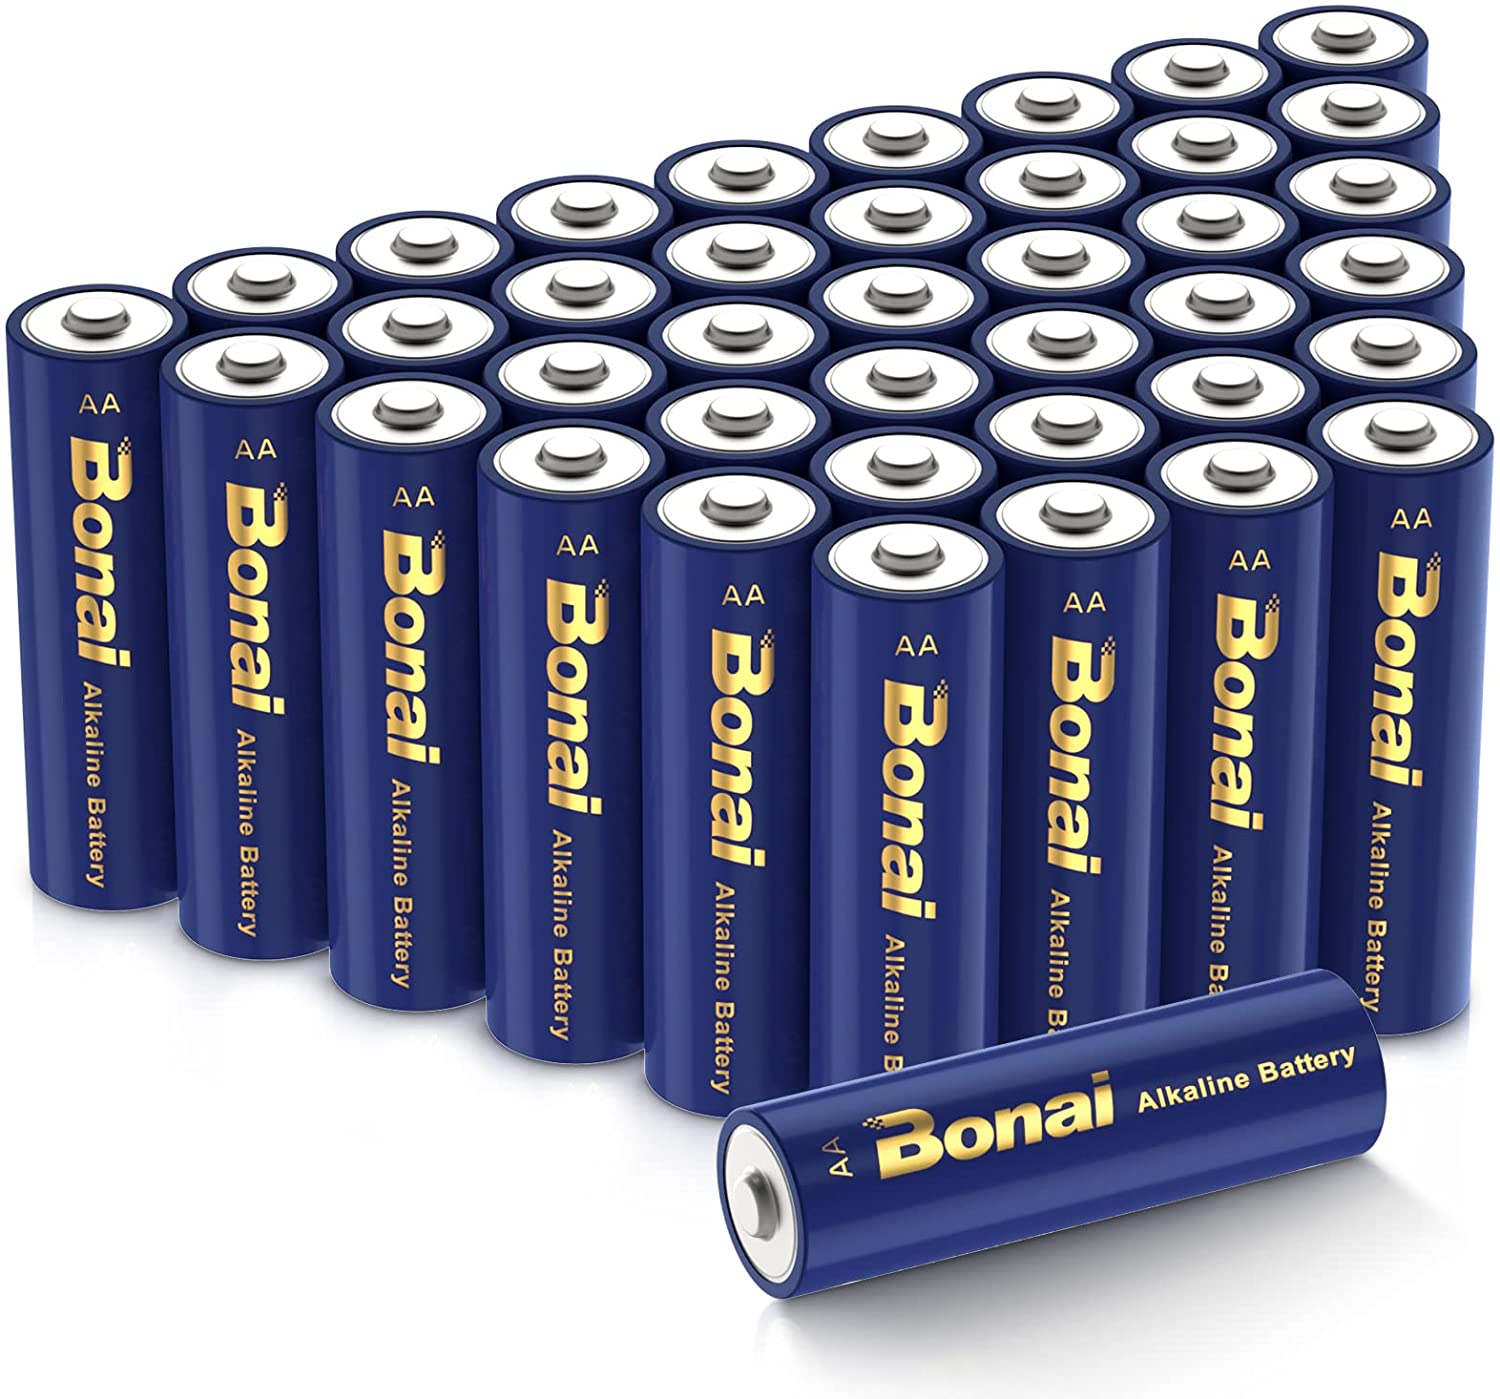 アマゾンでBONAI 乾電池 単3形/単4形 アルカリ電池 40個セットが半額セール中。ダイソーより高い。